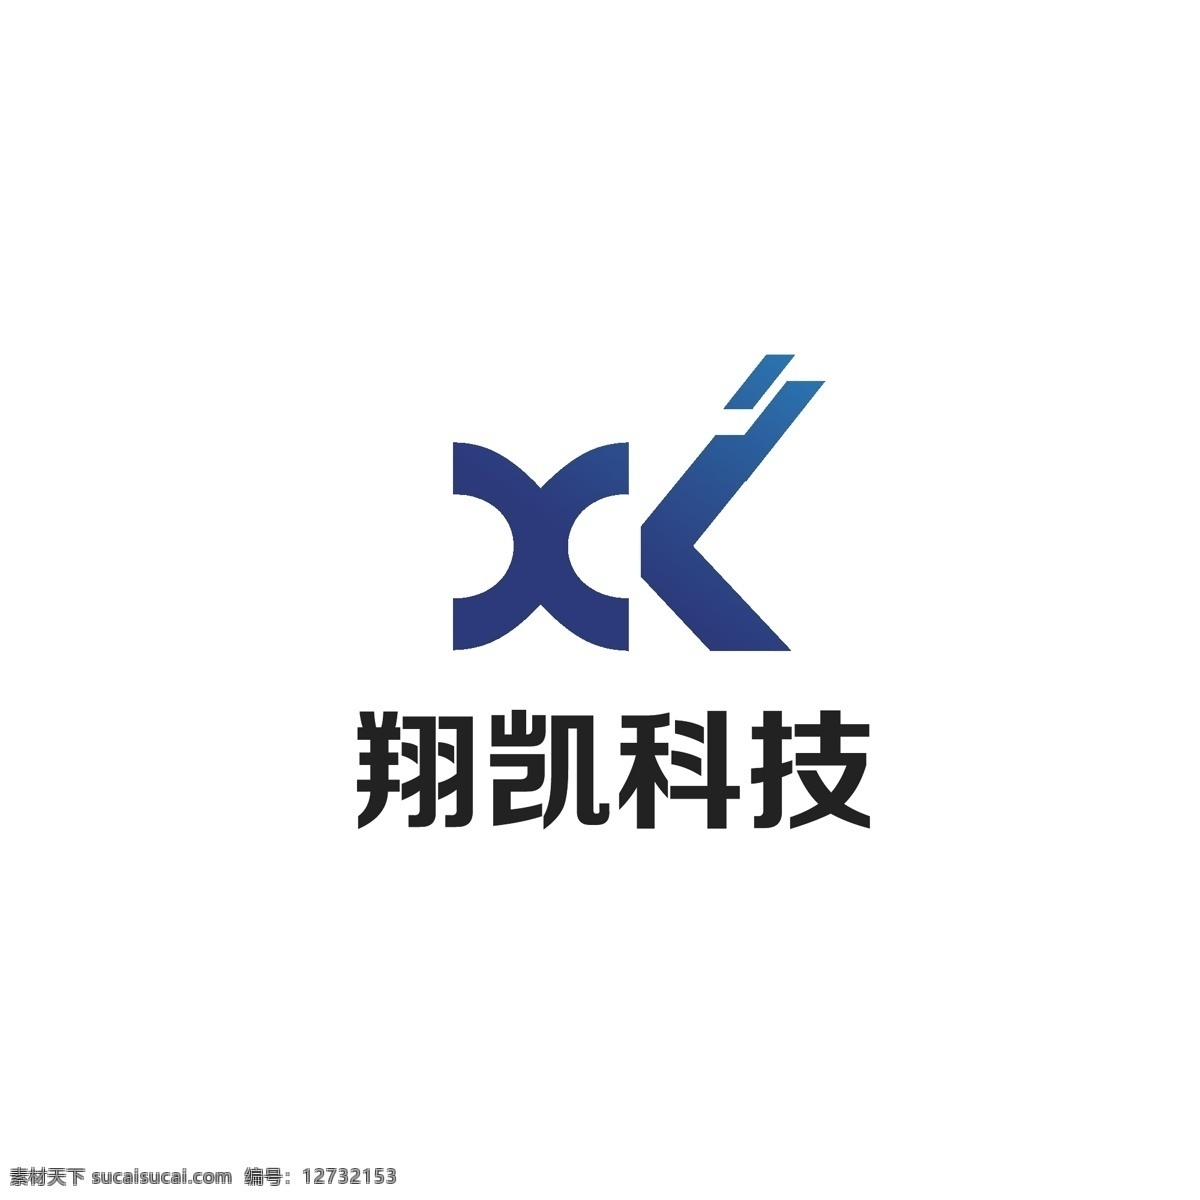 科技 信息 logo 简约 数据 发展 字母xk 信息流